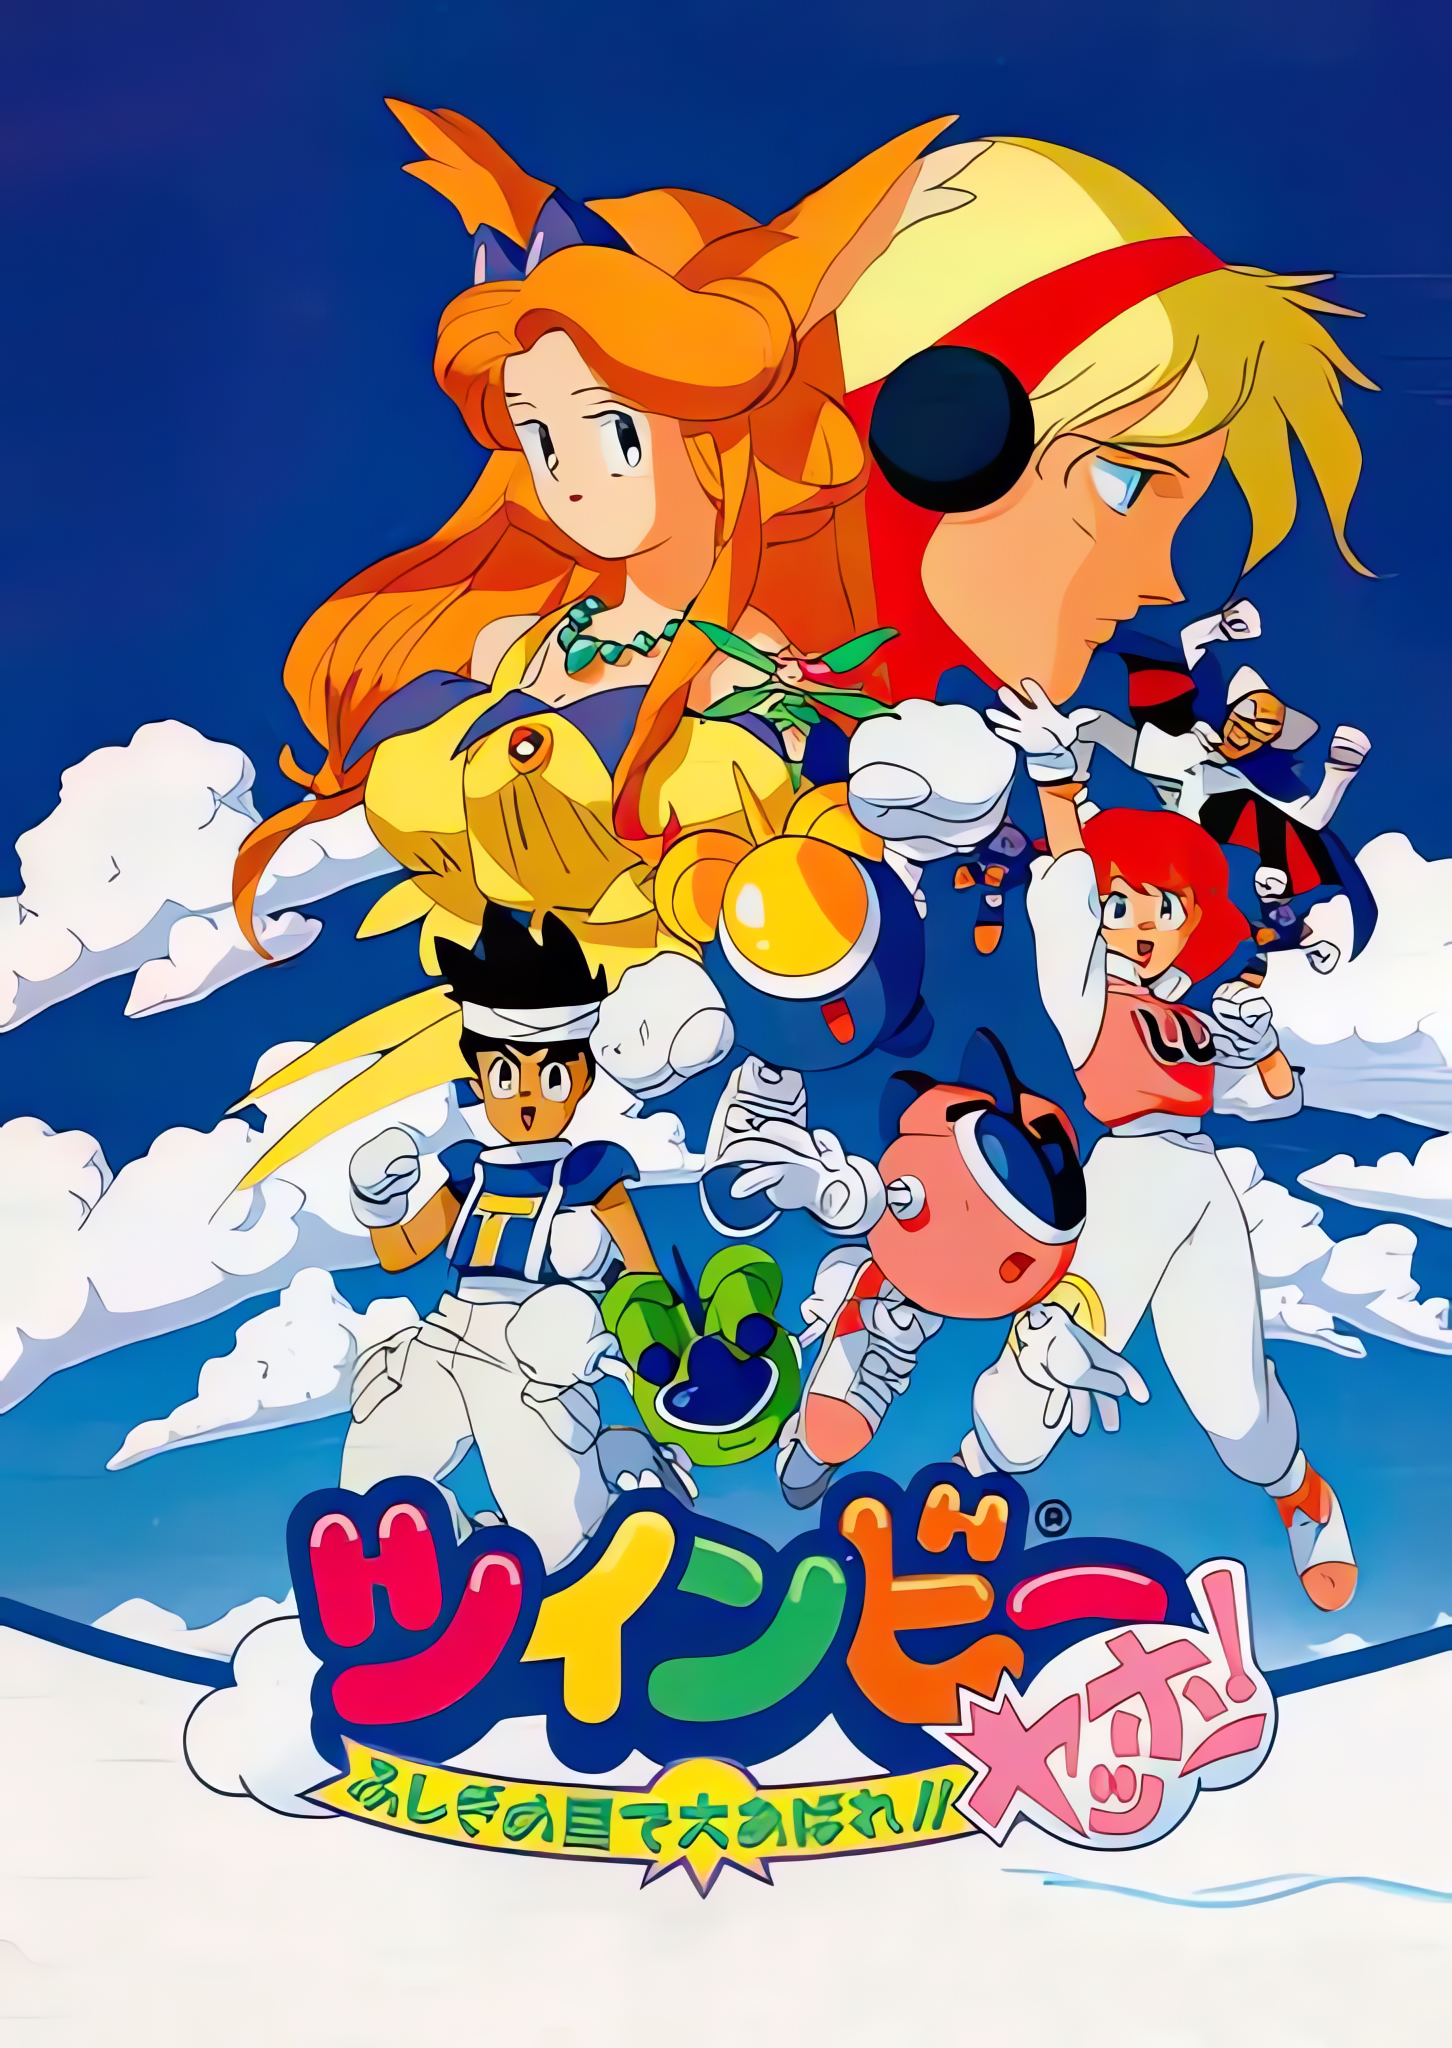 twinbee-yahho-fushigi-no-kuni-de-daiabare-game-poster-altar-of-gaming-726x1024.png